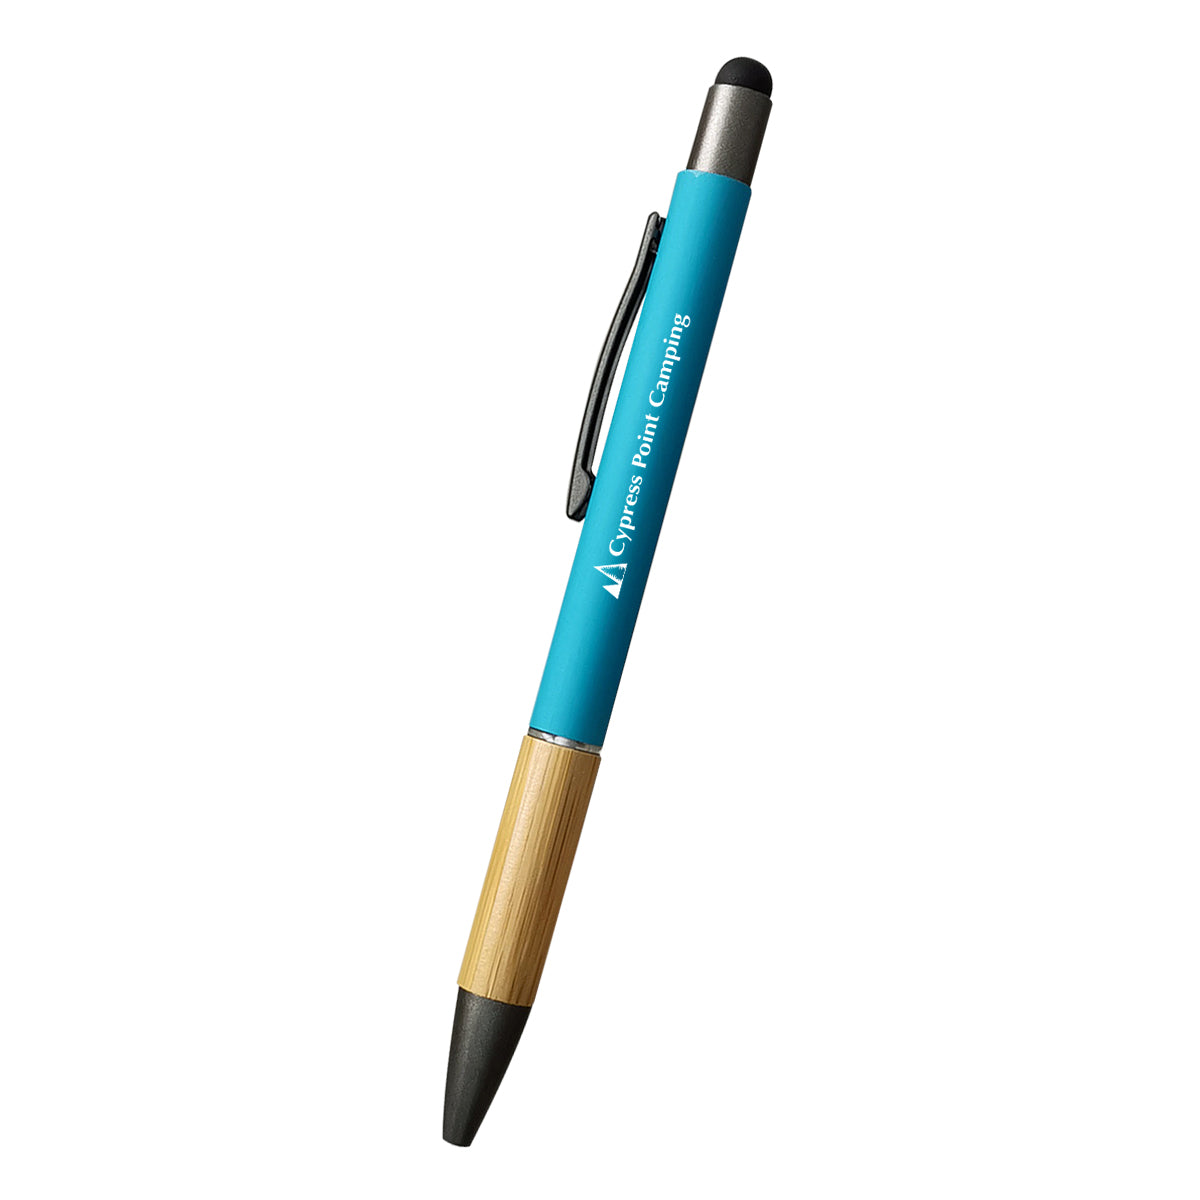 Customizable Aidan bamboo stylus pen in teal.